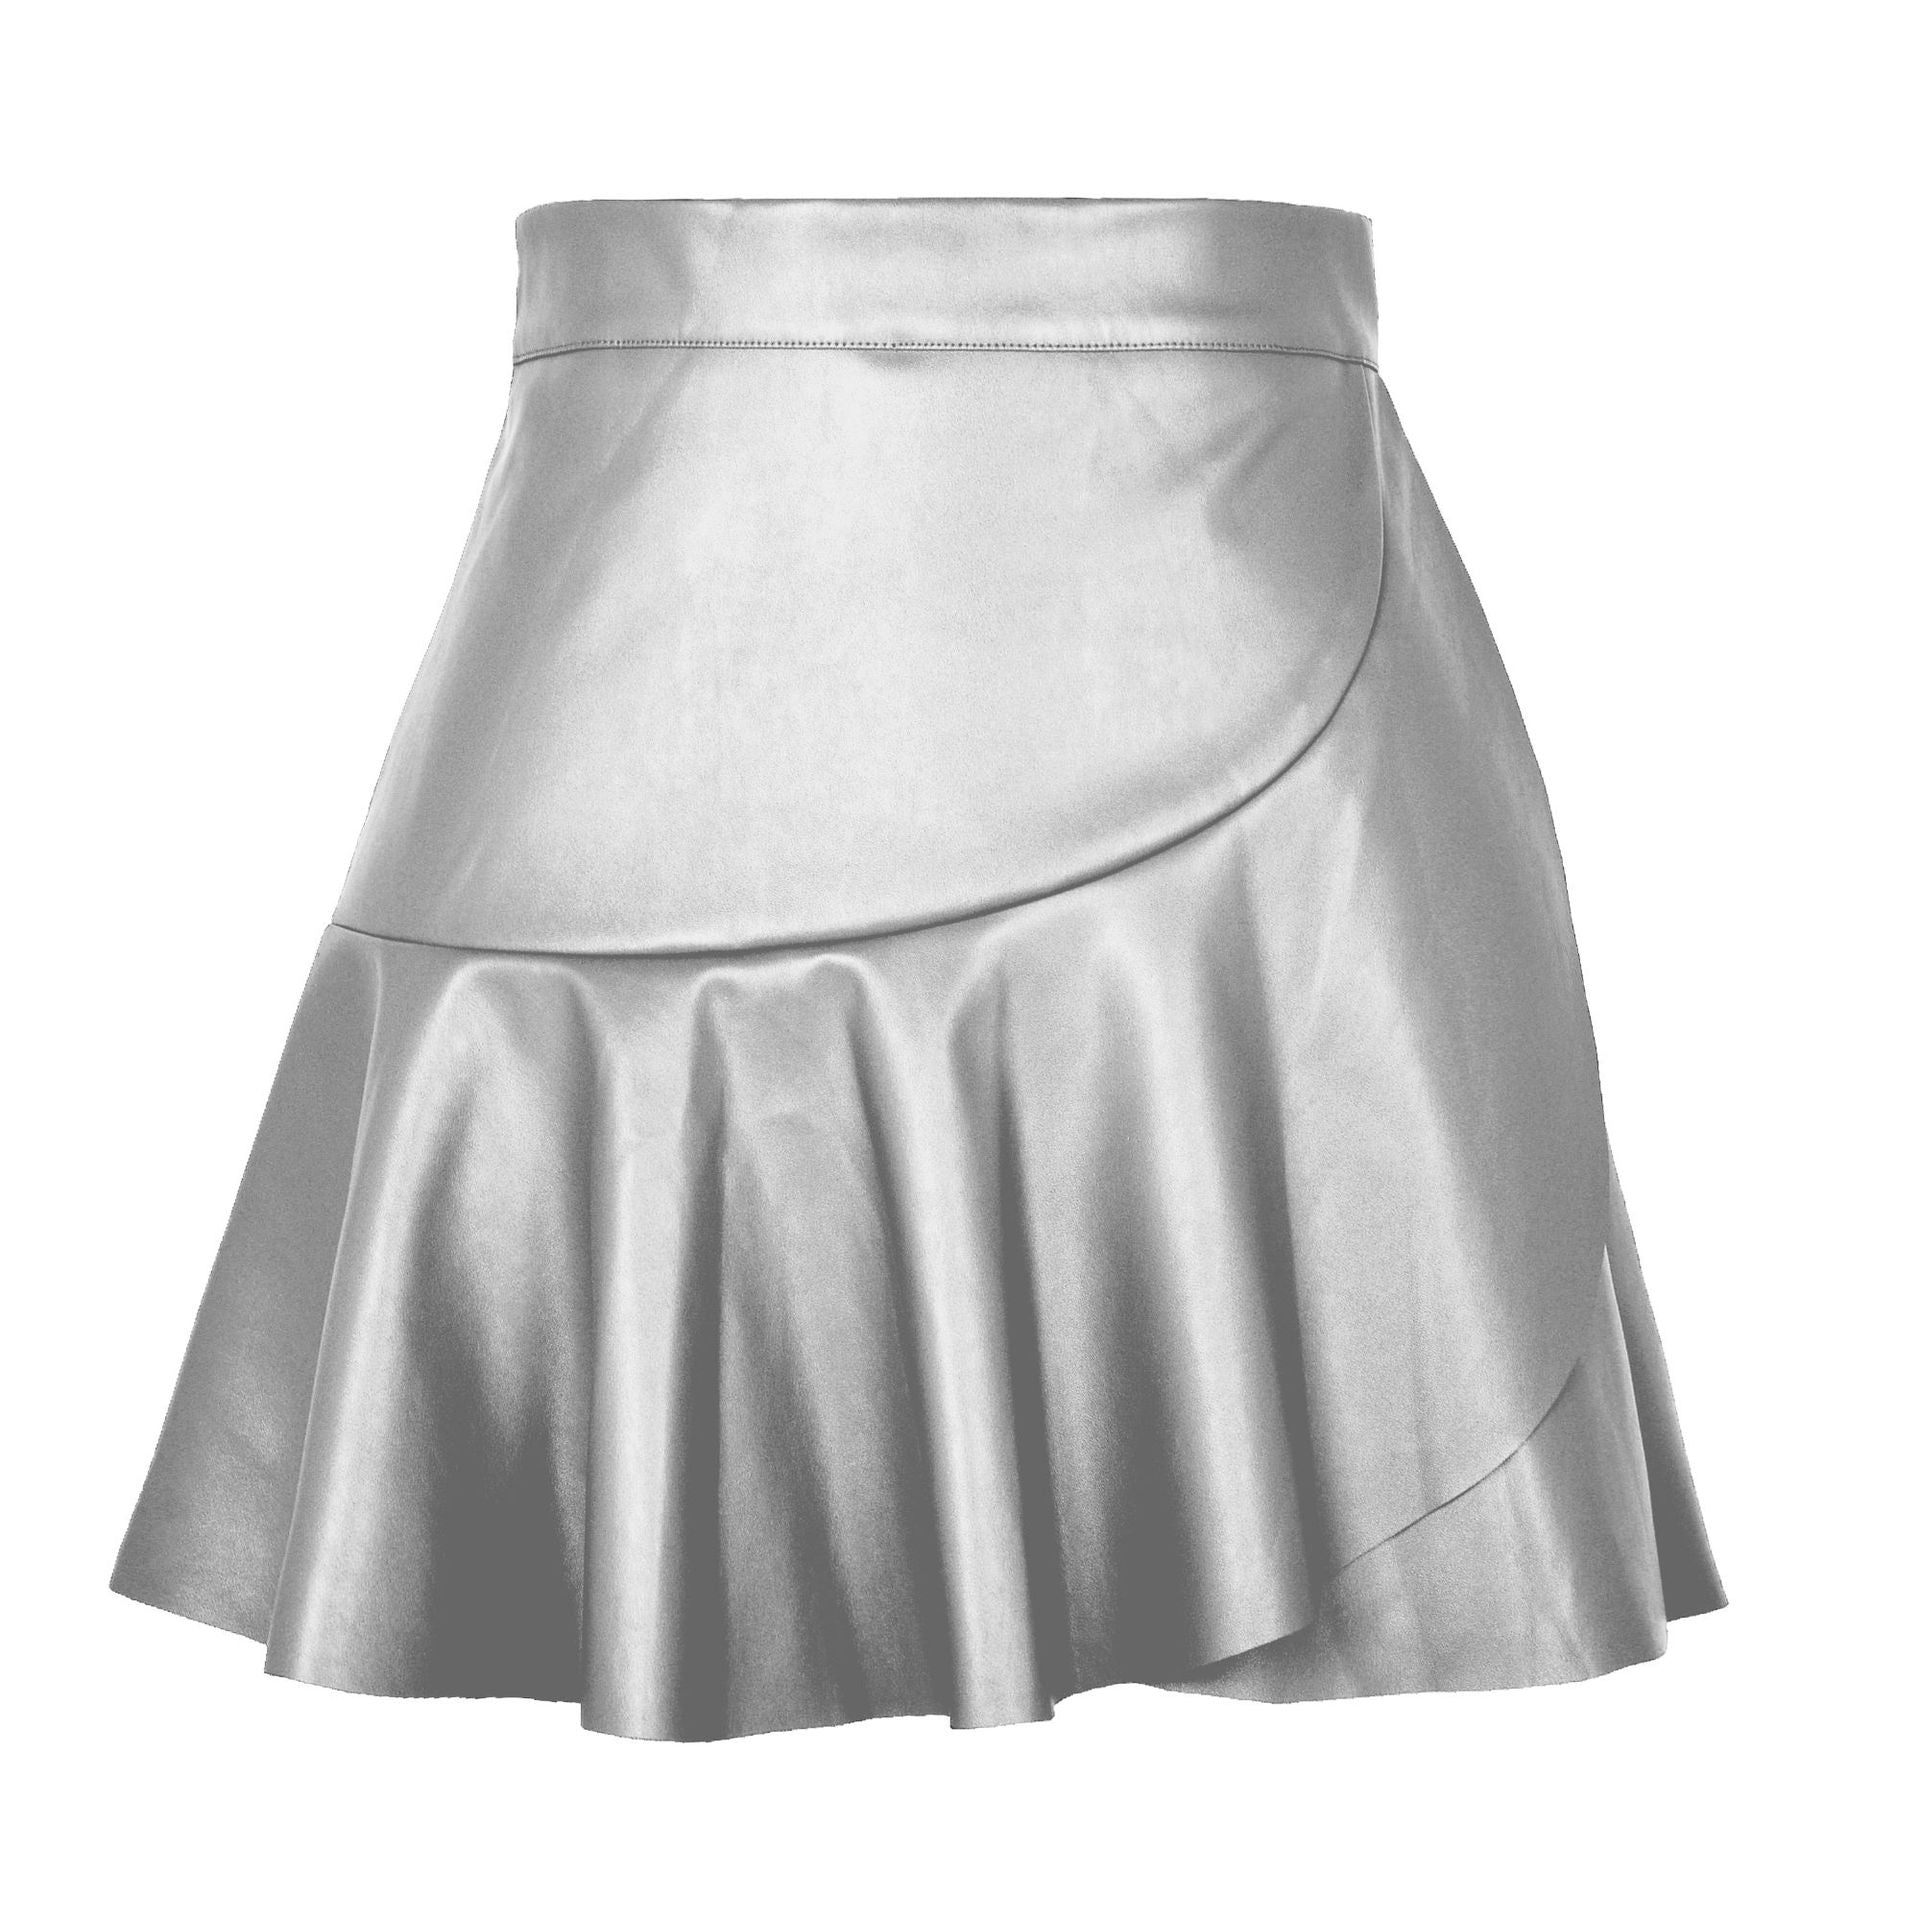 High Waist Ruffles Irregular Asymmetric Leather Skirt Skirt Sexy Sexy Faux Leather Skirt Women Clothing